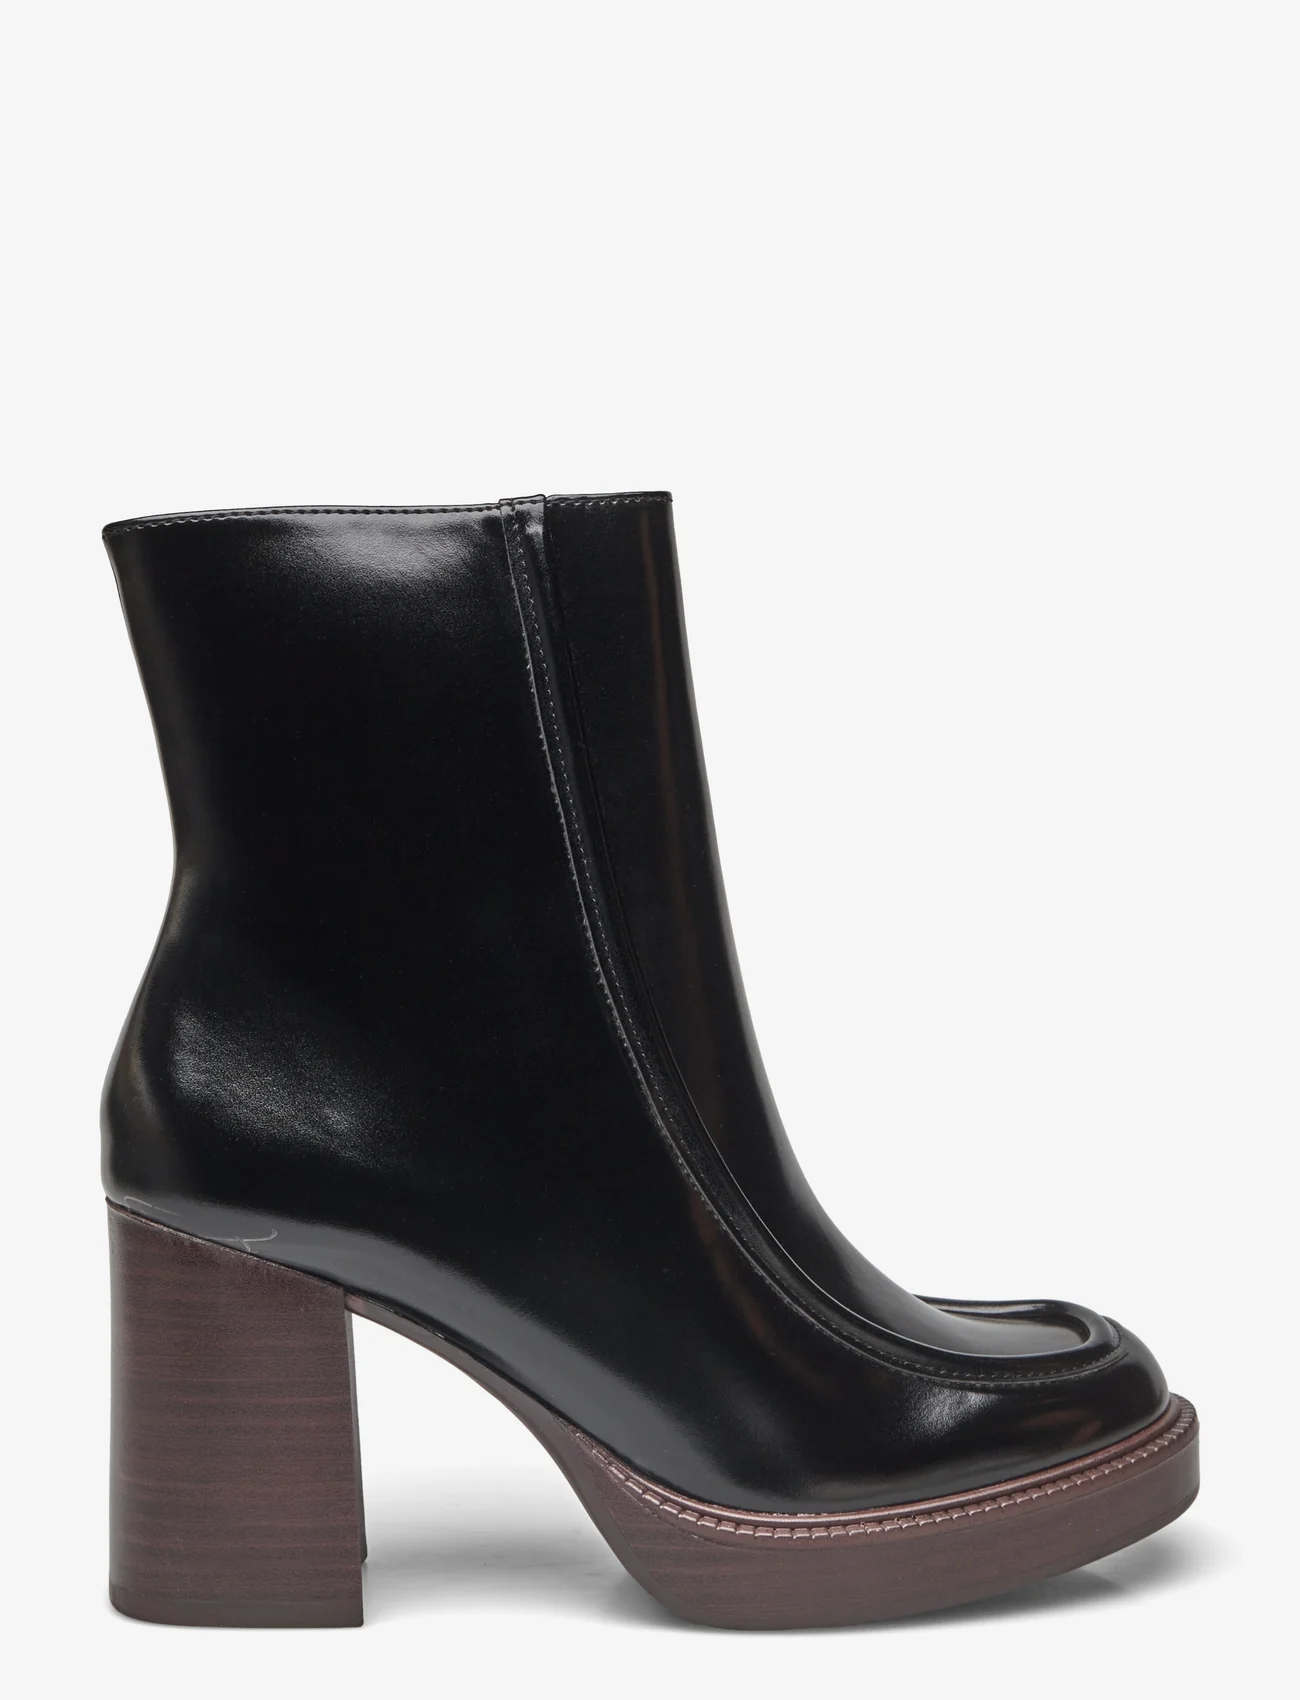 Tamaris - Women Boots - high heel - black - 1